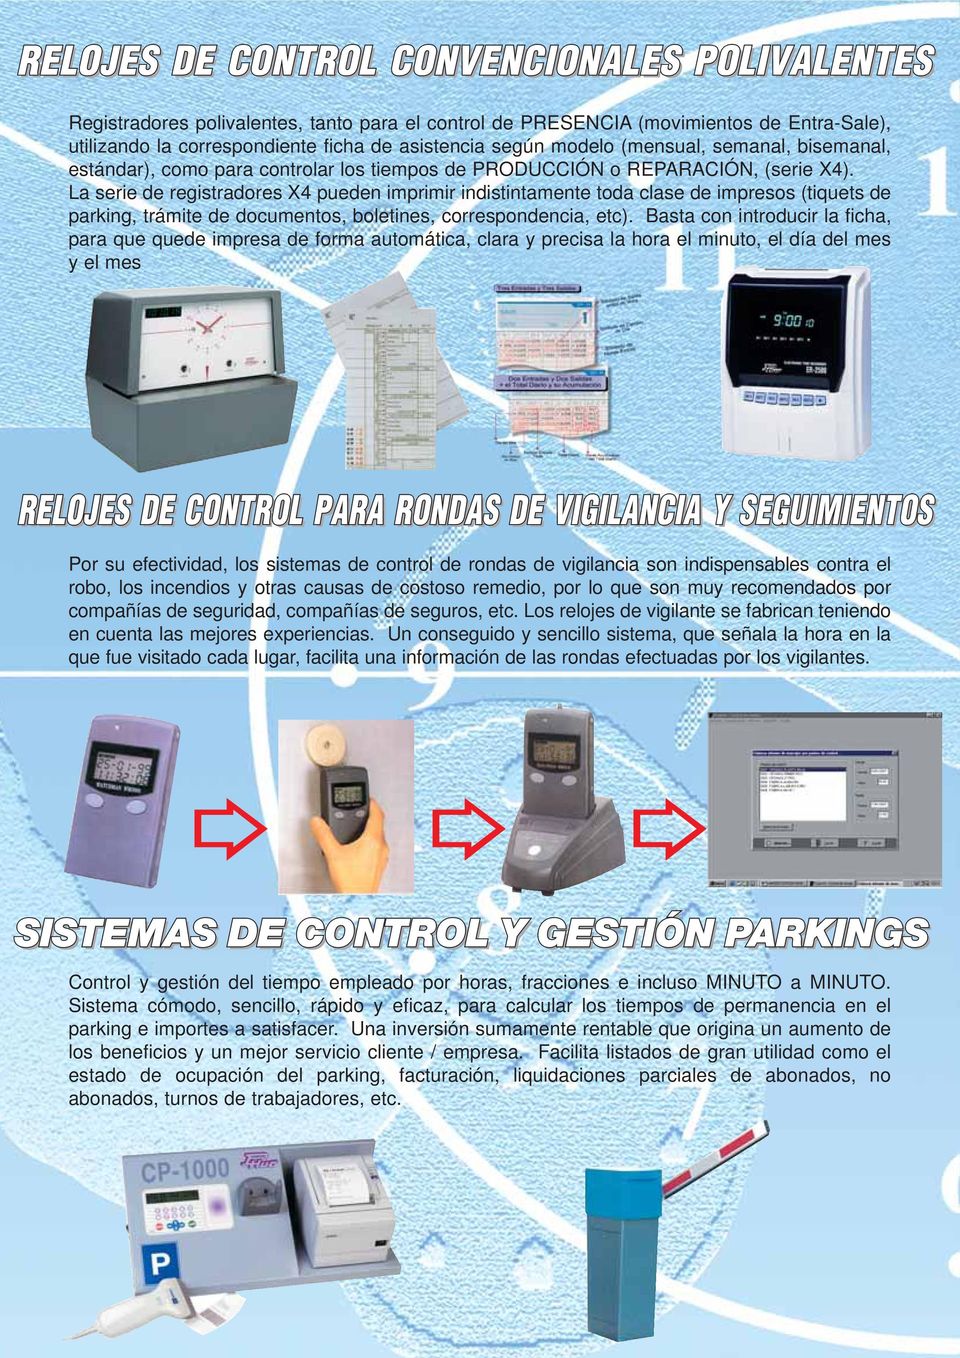 La serie de registradores X4 pueden imprimir indistintamente toda clase de impresos (tiquets de parking, trámite de documentos, boletines, correspondencia, etc).